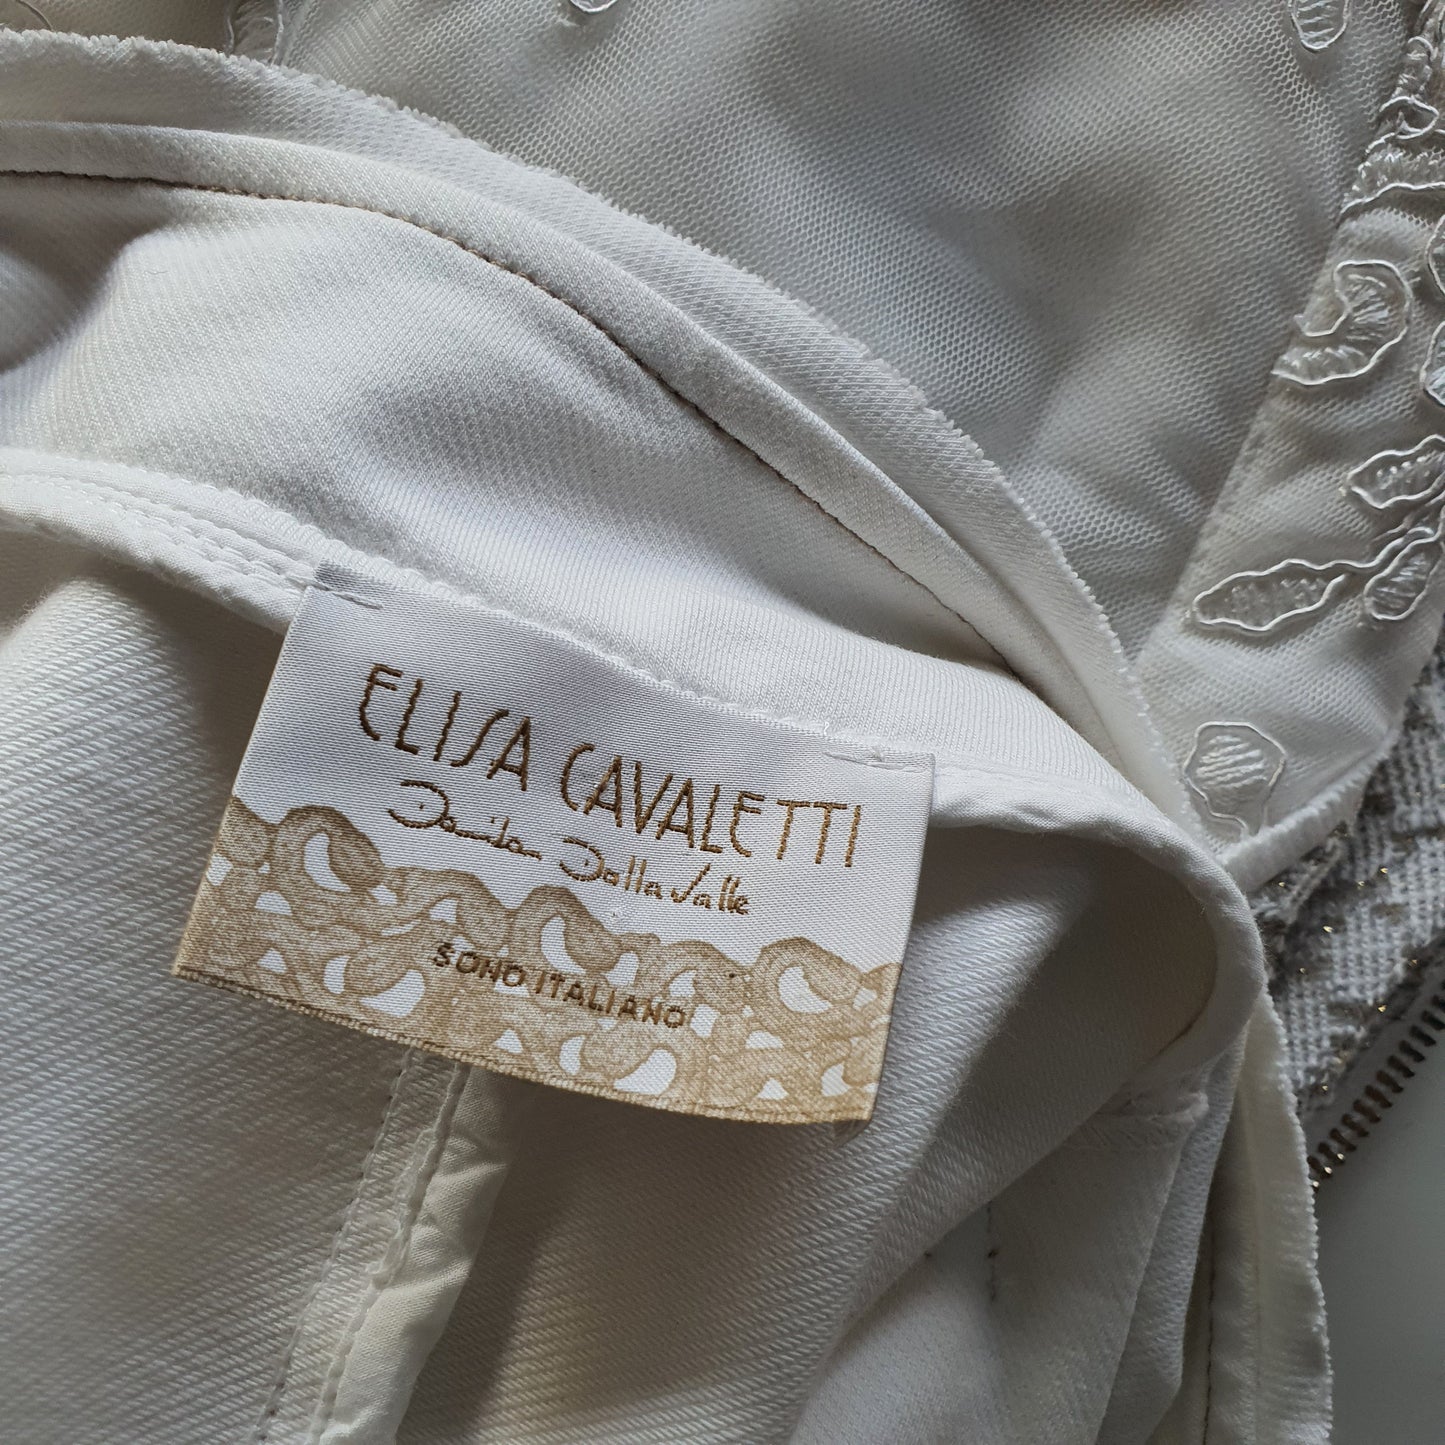 Elisa Cavaletti Cream Embroidered Stone Jacket (16)